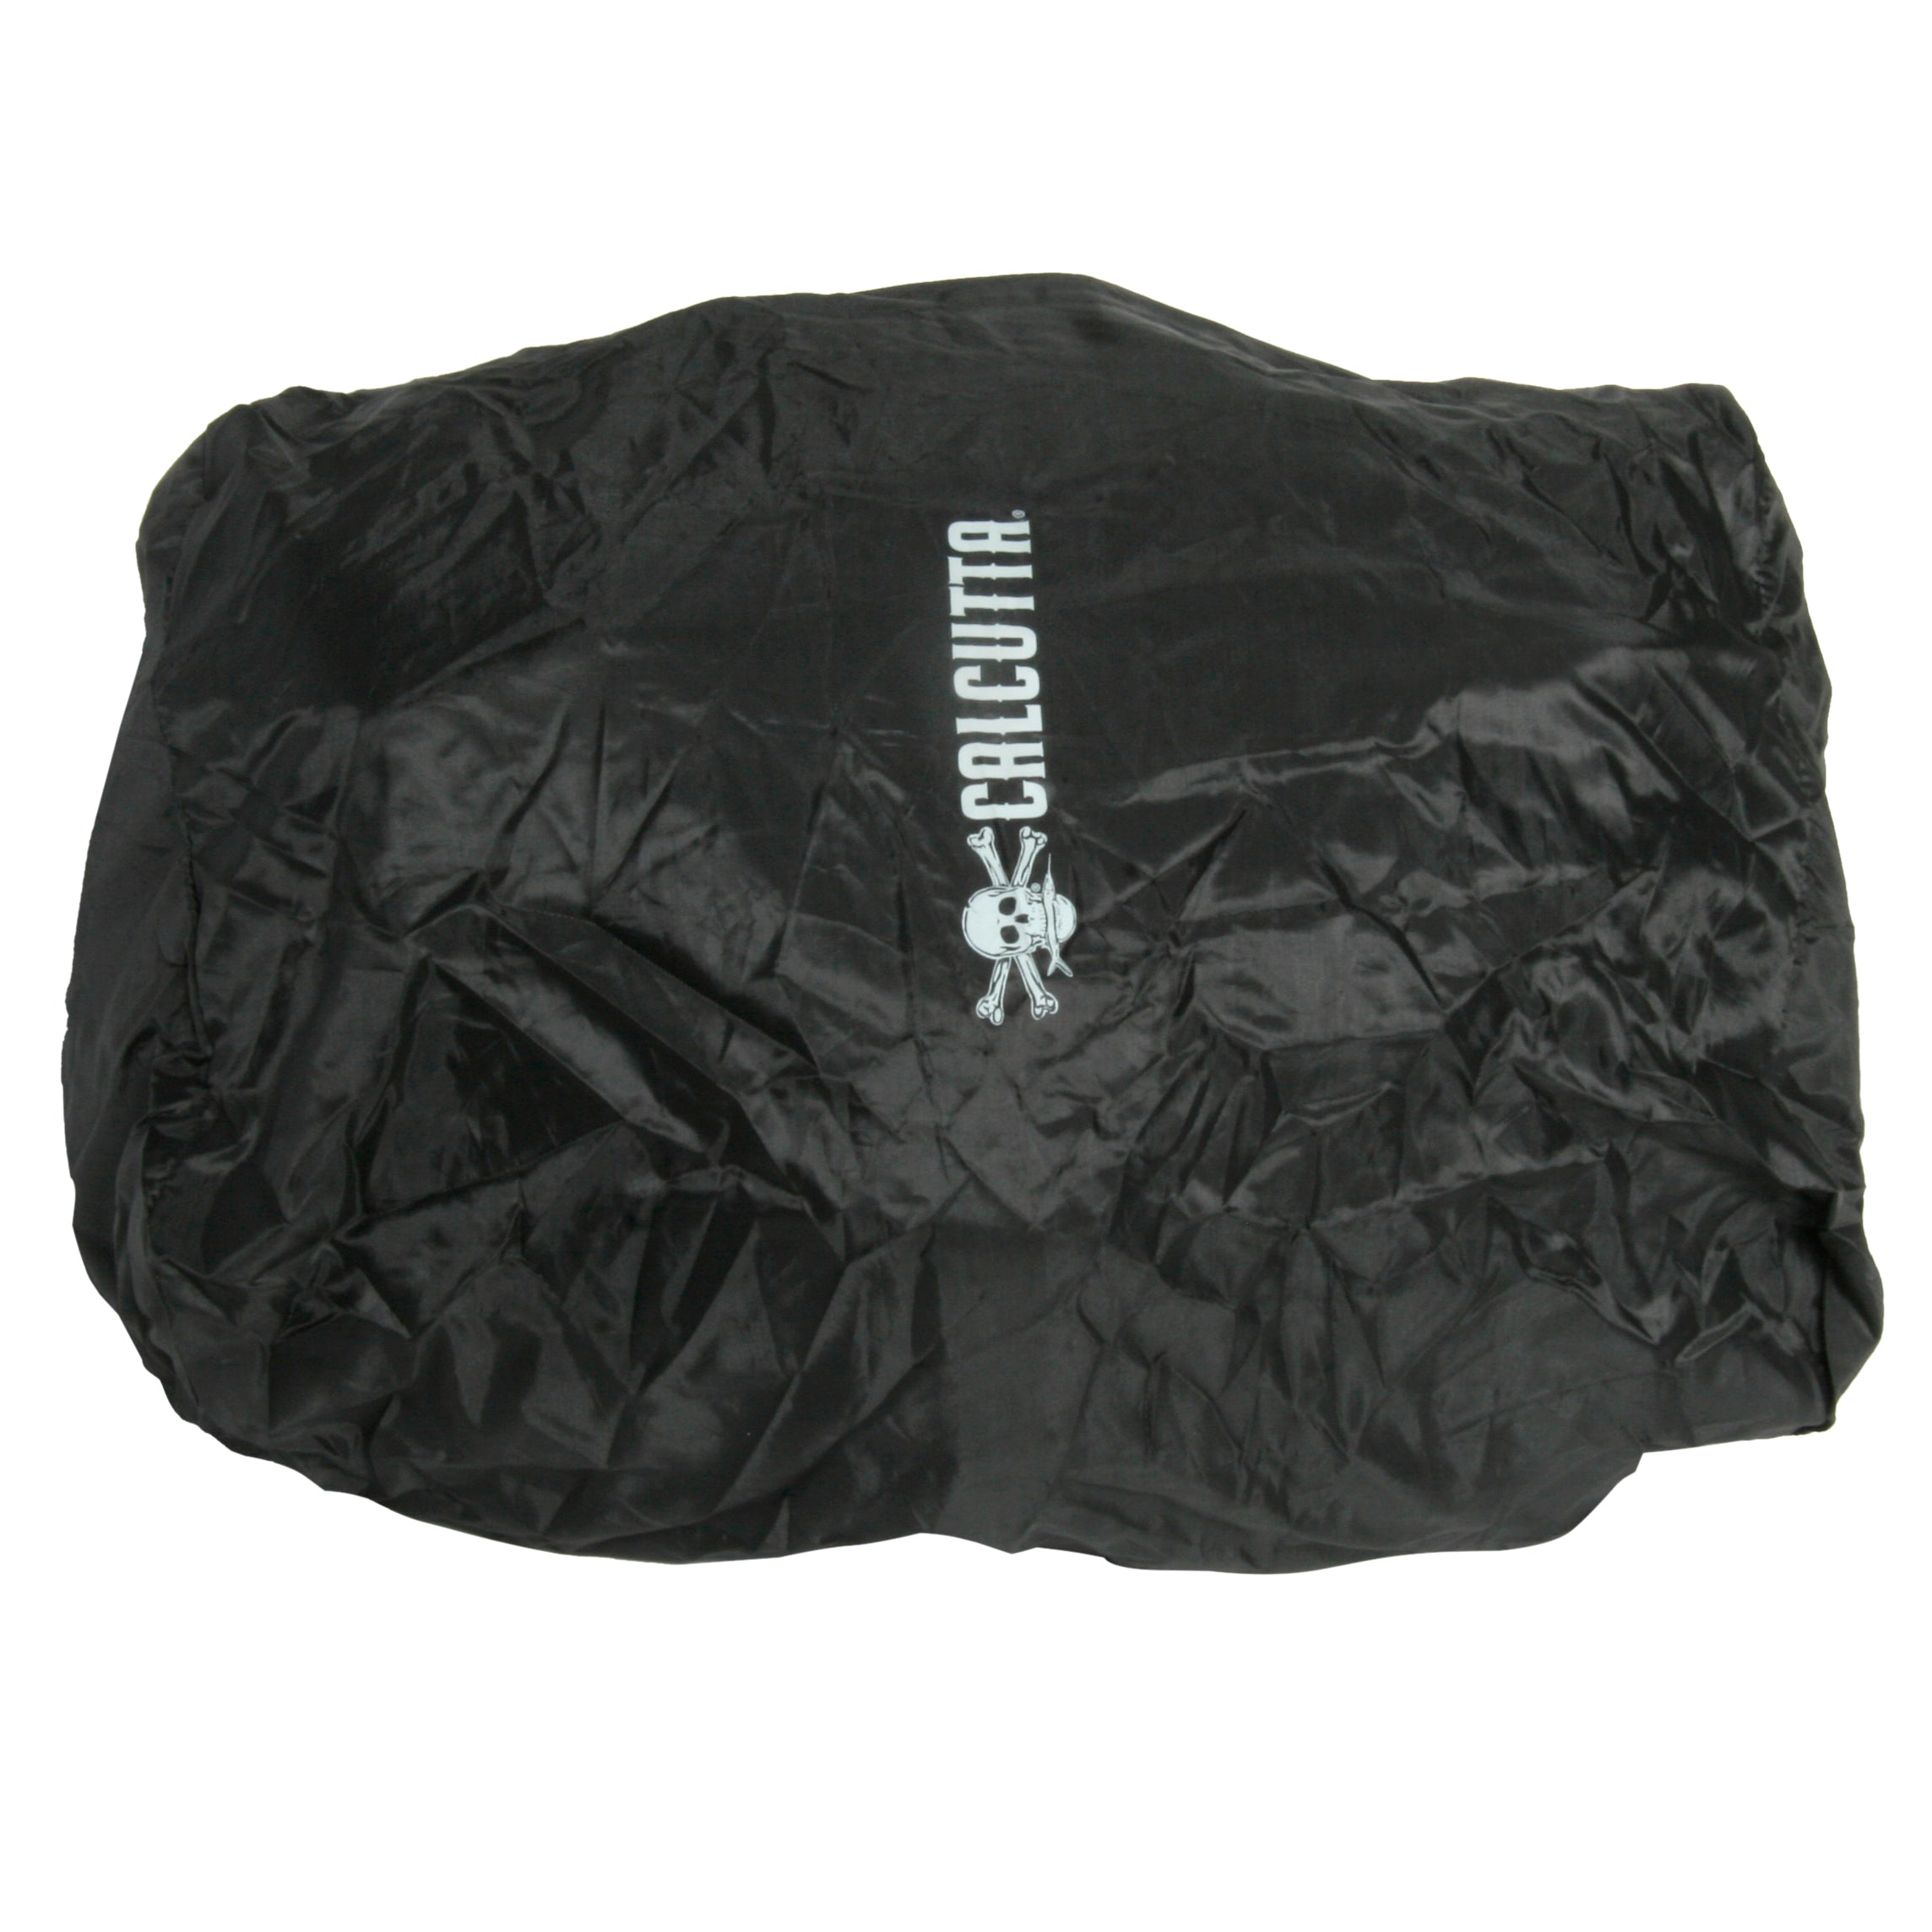 Squall Tackle Bag - 4 3600 Boxes